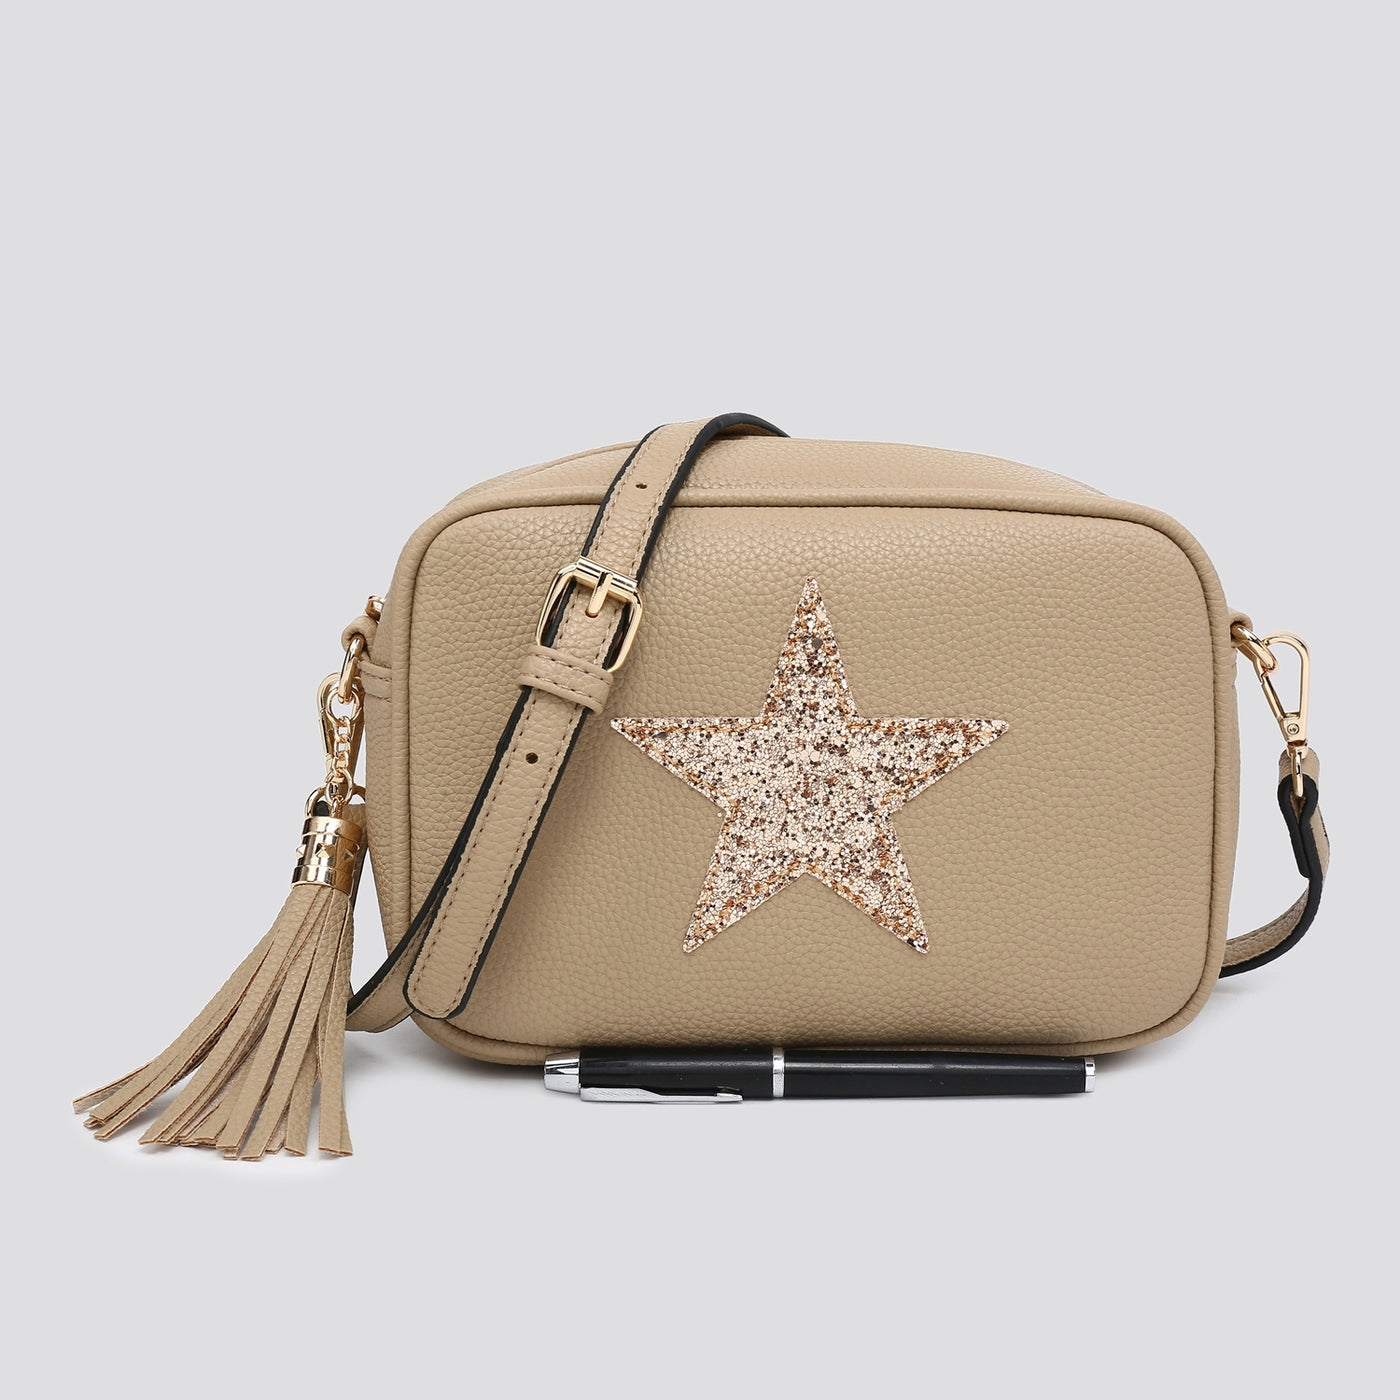 Sand Star Elsie Cross-Body Bag